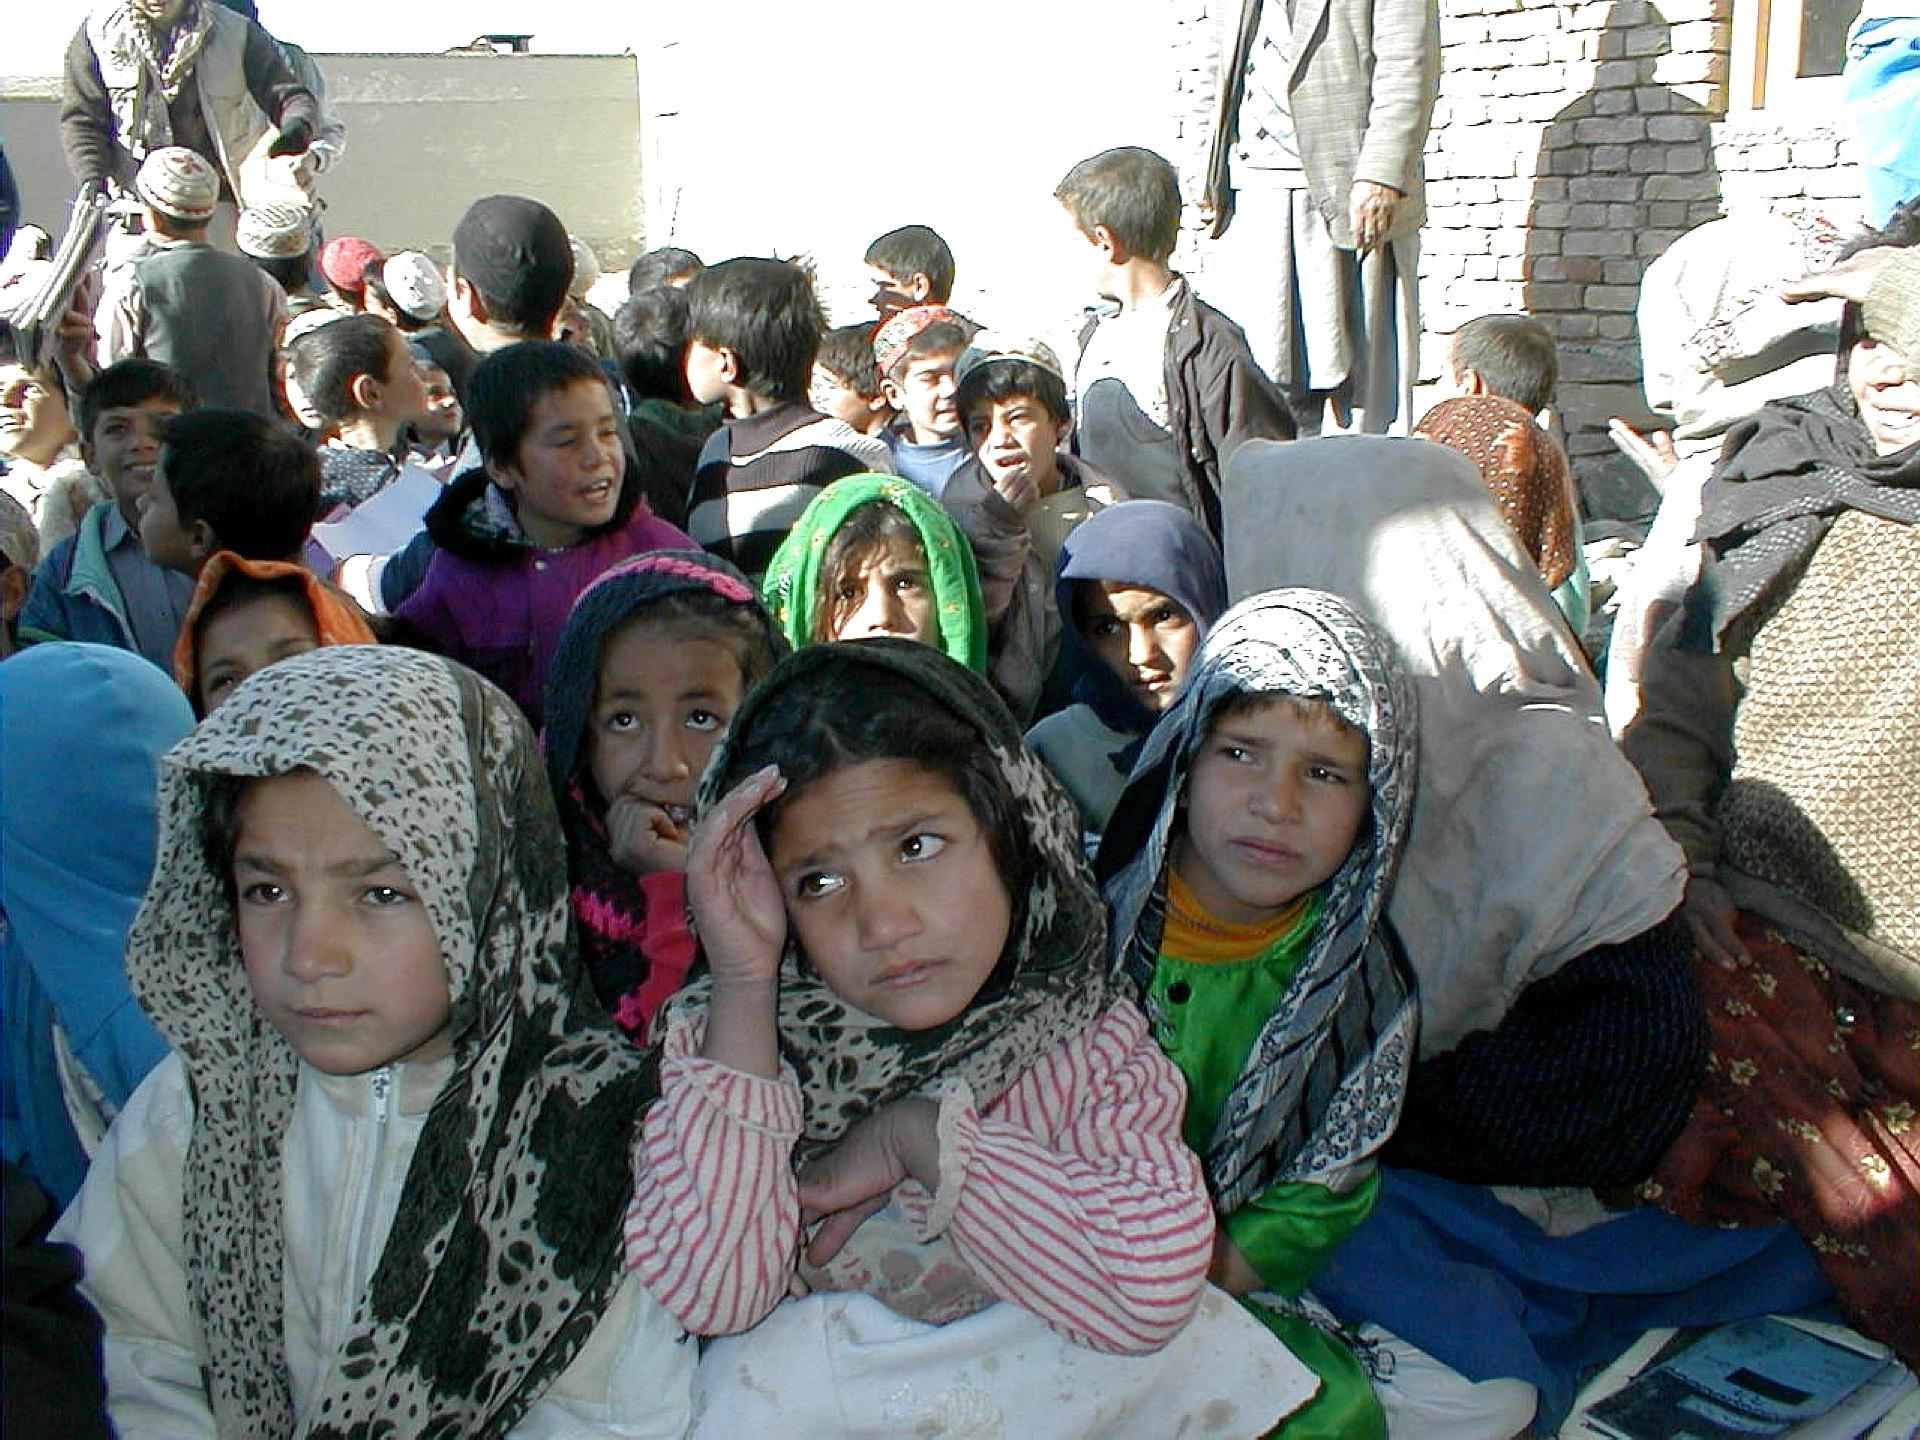 Dänemark schickt Hilfe nach Afghanistan, während die Taliban die Kontrolle übernehmen